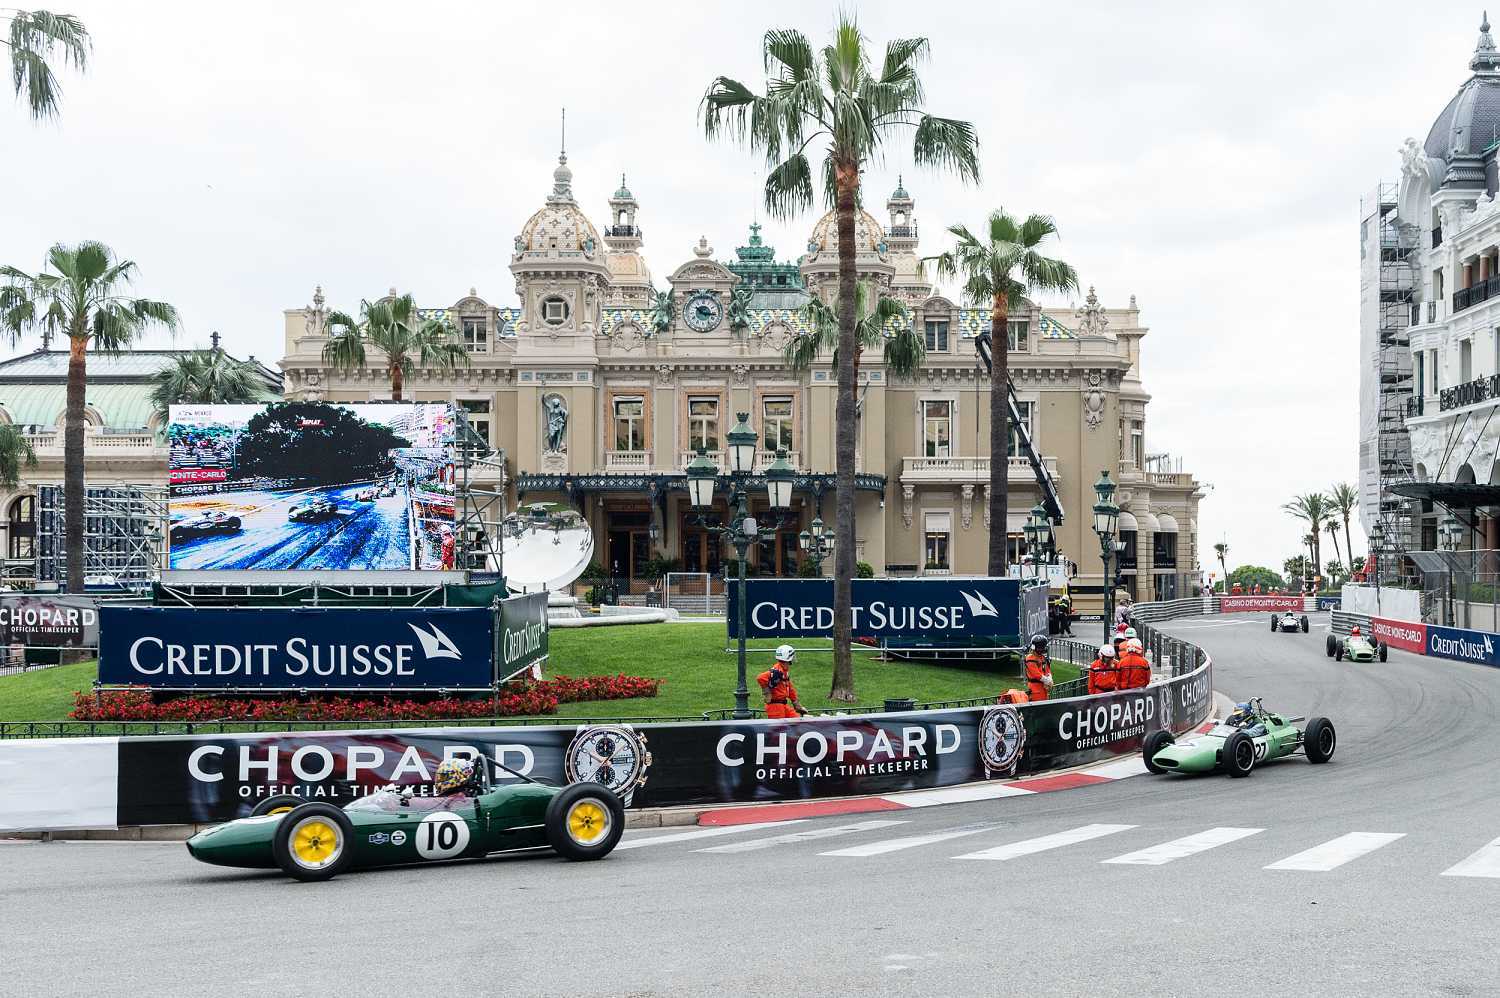 Chopard oficiální časomíra Grand Prix de Monaco 1 | Hodinky Tissot PR100 Lady Sport Chic 51